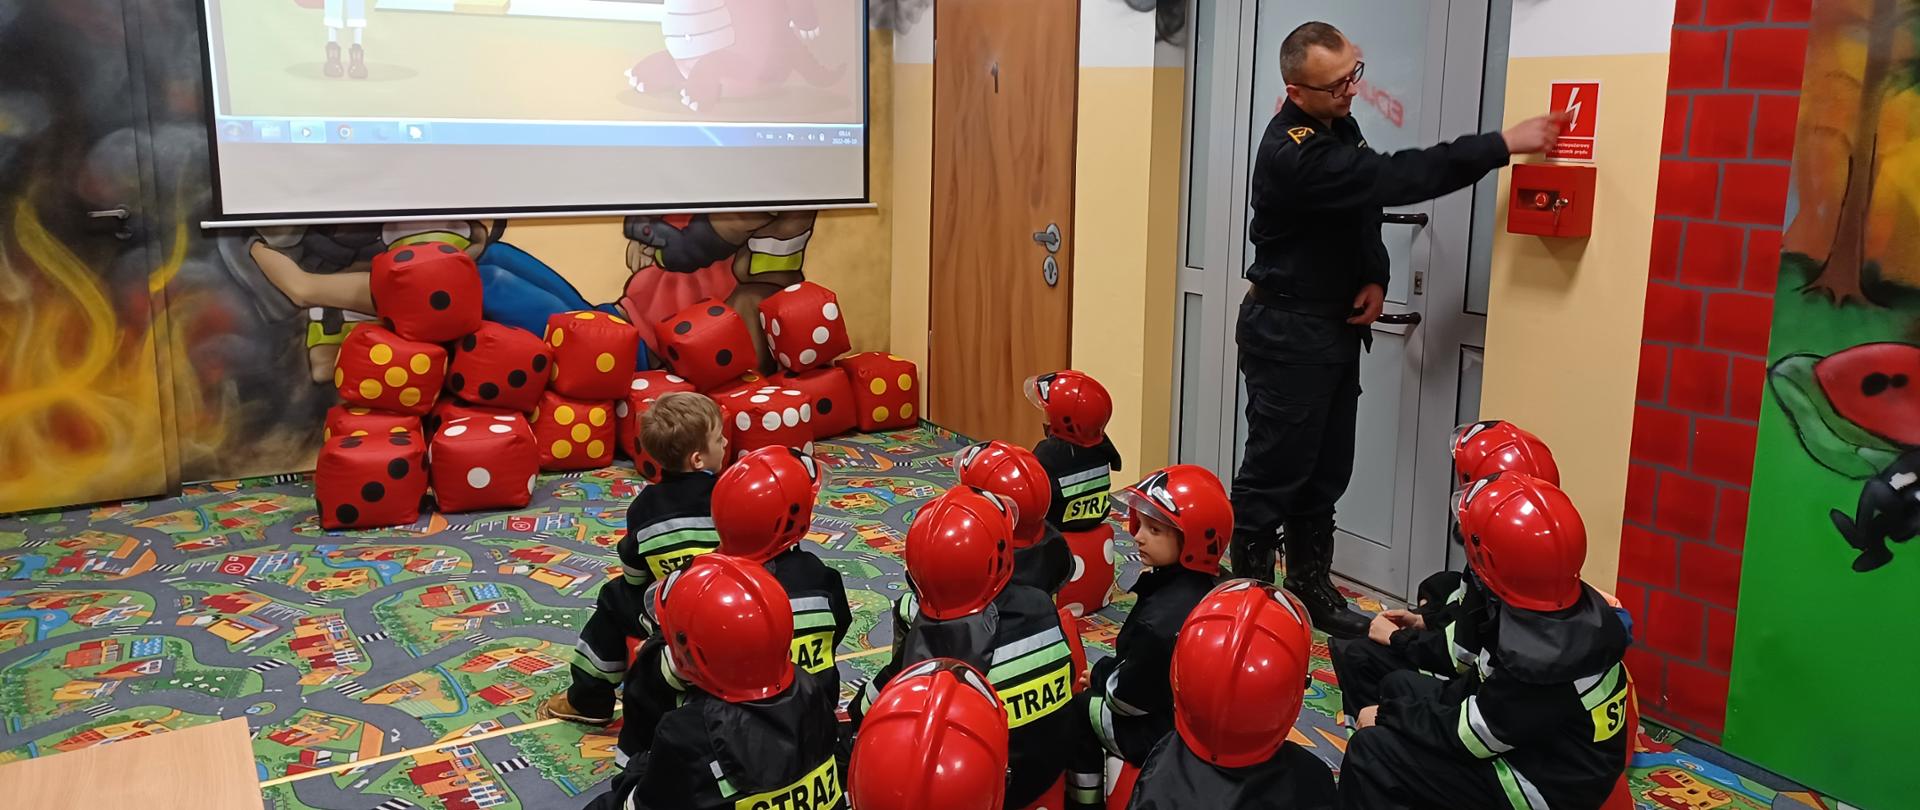 Dzieci w ubrane w przebranie strażackie siedzą na czerwonych pufach w sali edukacyjnej i słuchają strażaka, który prowadzi zajęcia. Na ścianie widoczny jest puszczany filmik z projektora. 